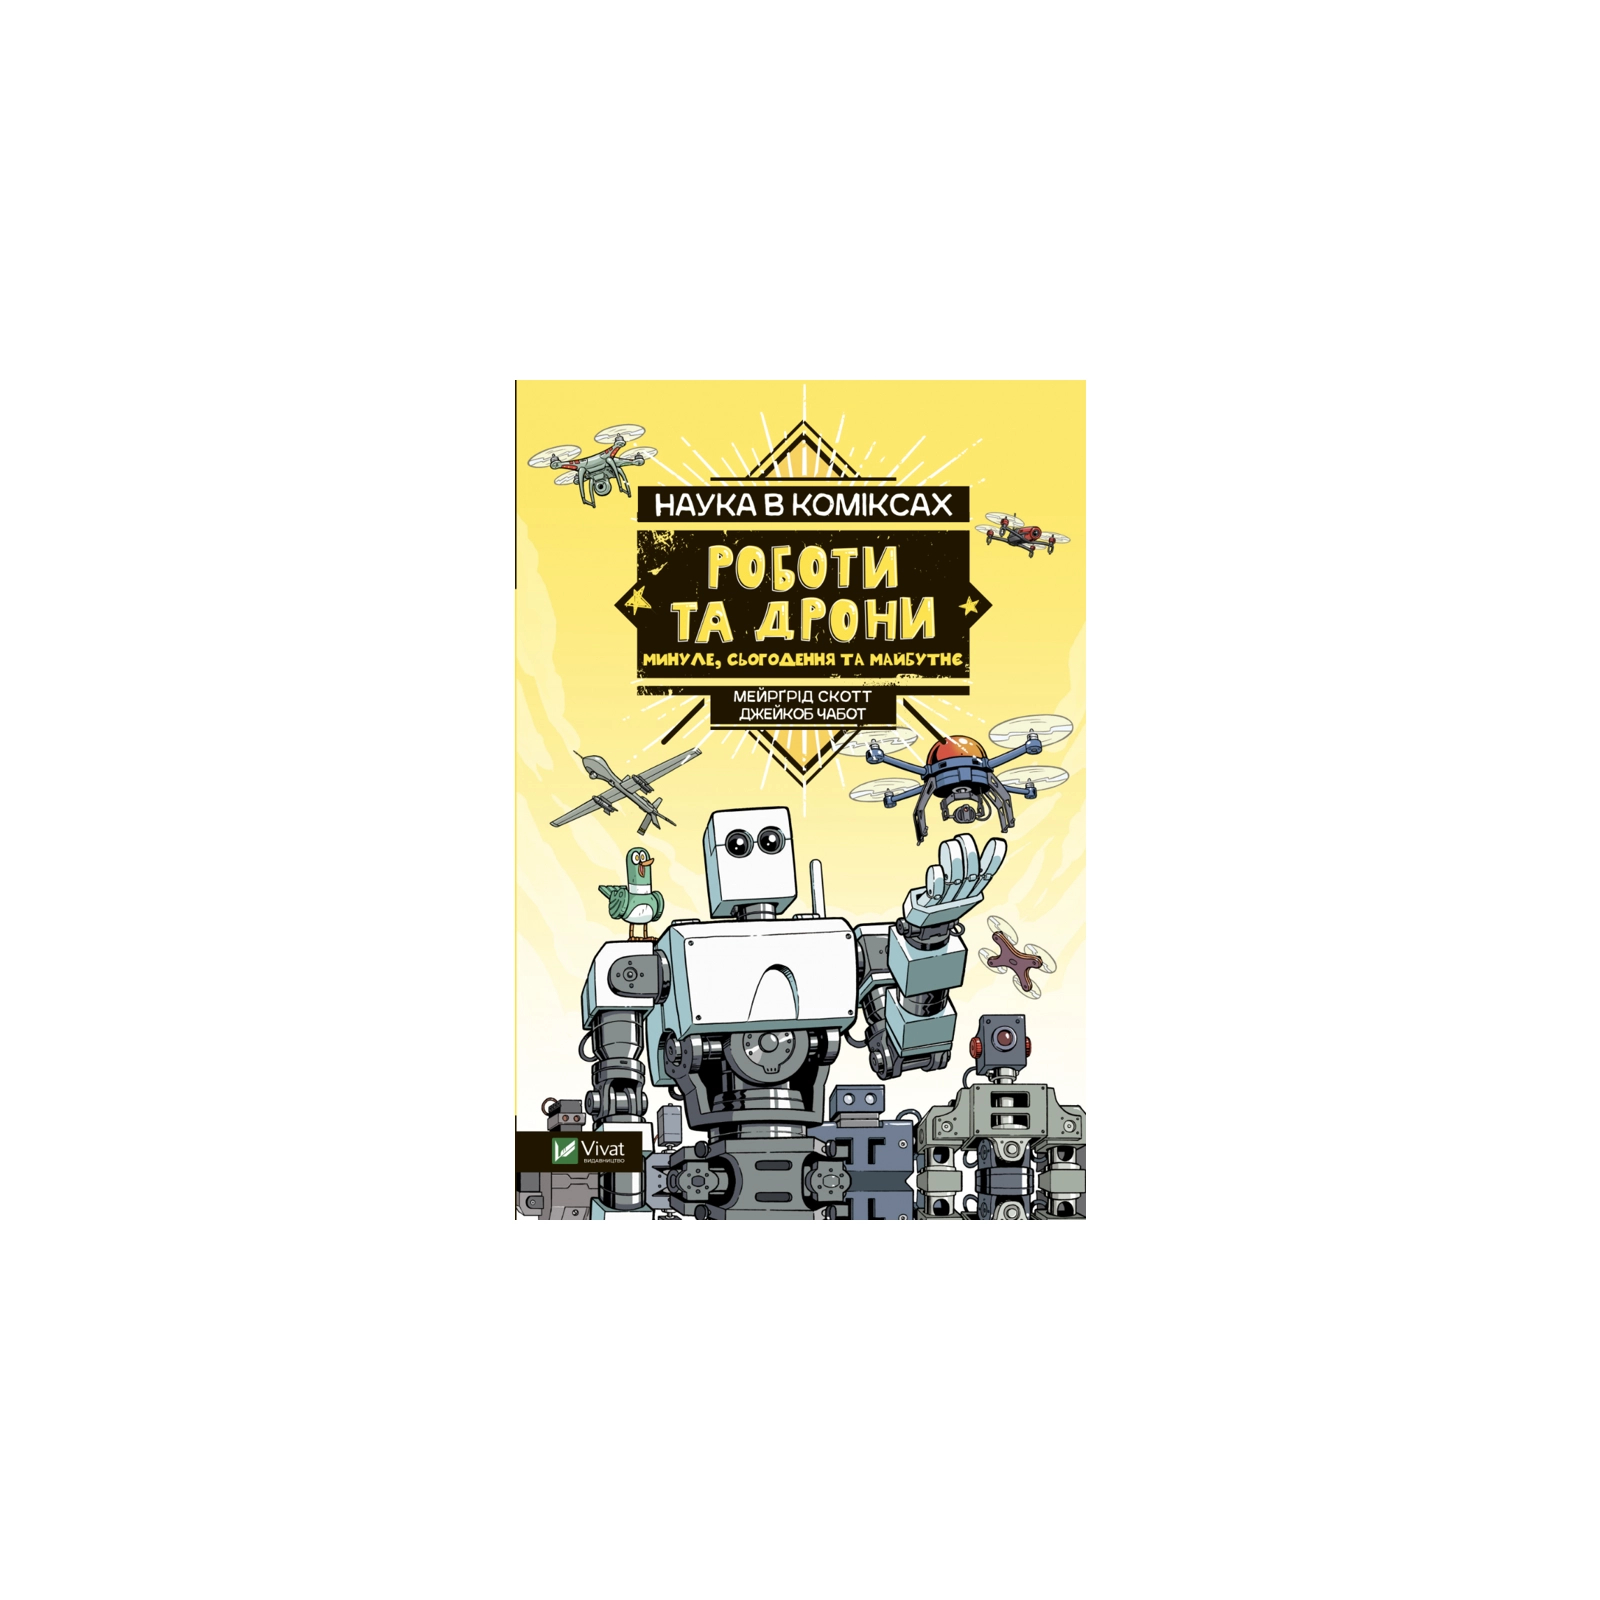 Комікс Наука у коміксах. Роботи та дрони: минуле, сучасне і майбутнє - Мейрґрід Скотт Vivat (9789669828941)